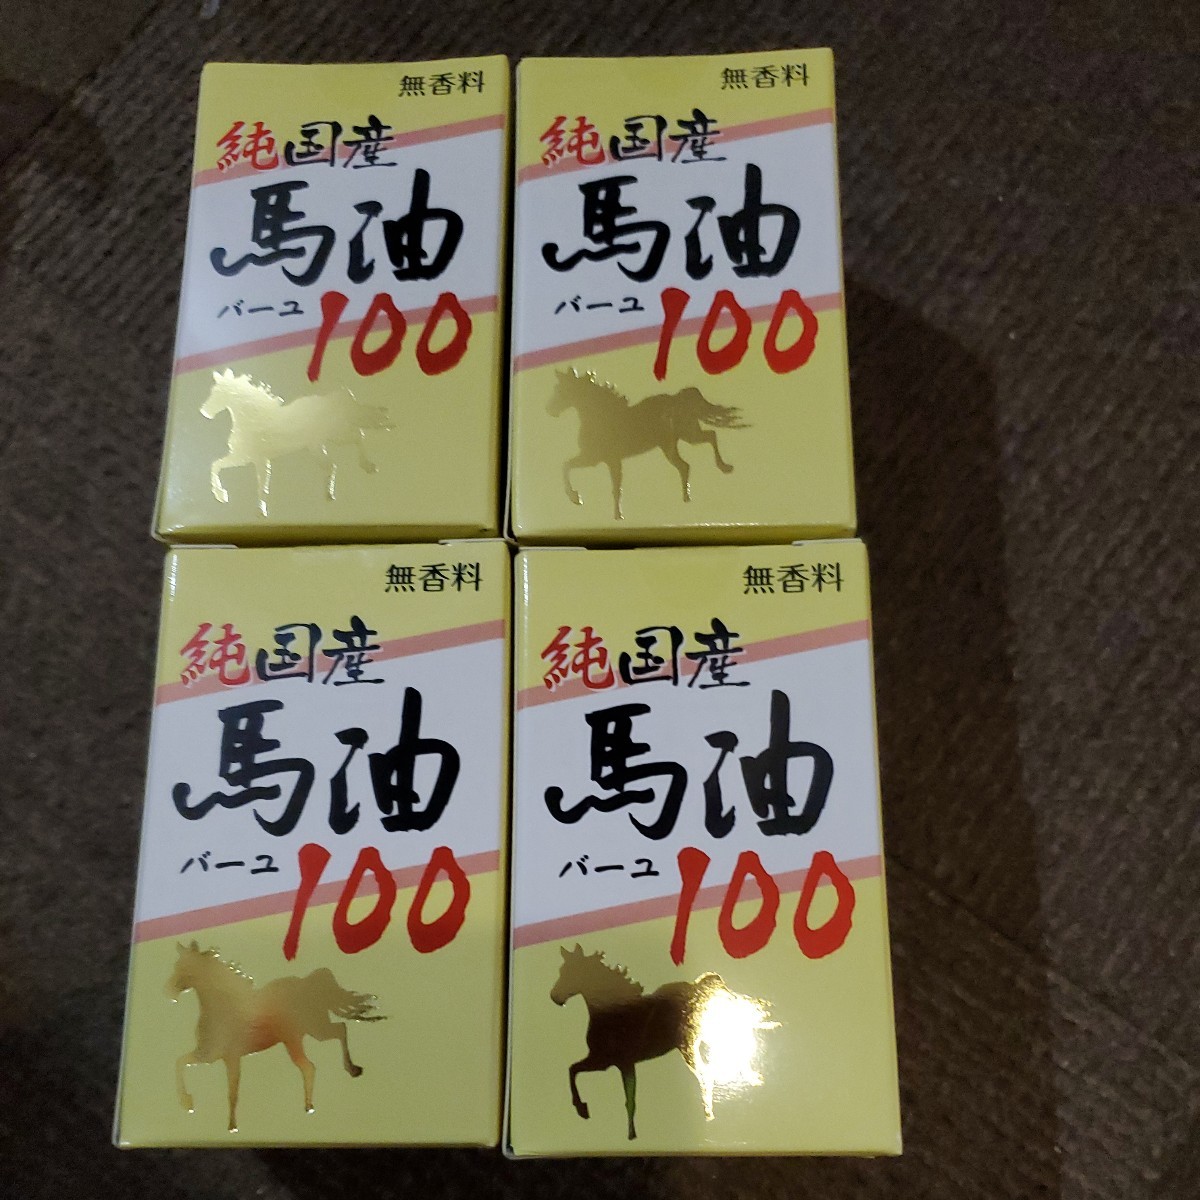 ... японского производства  лошадь  ... 4 штуки ... лекарство  